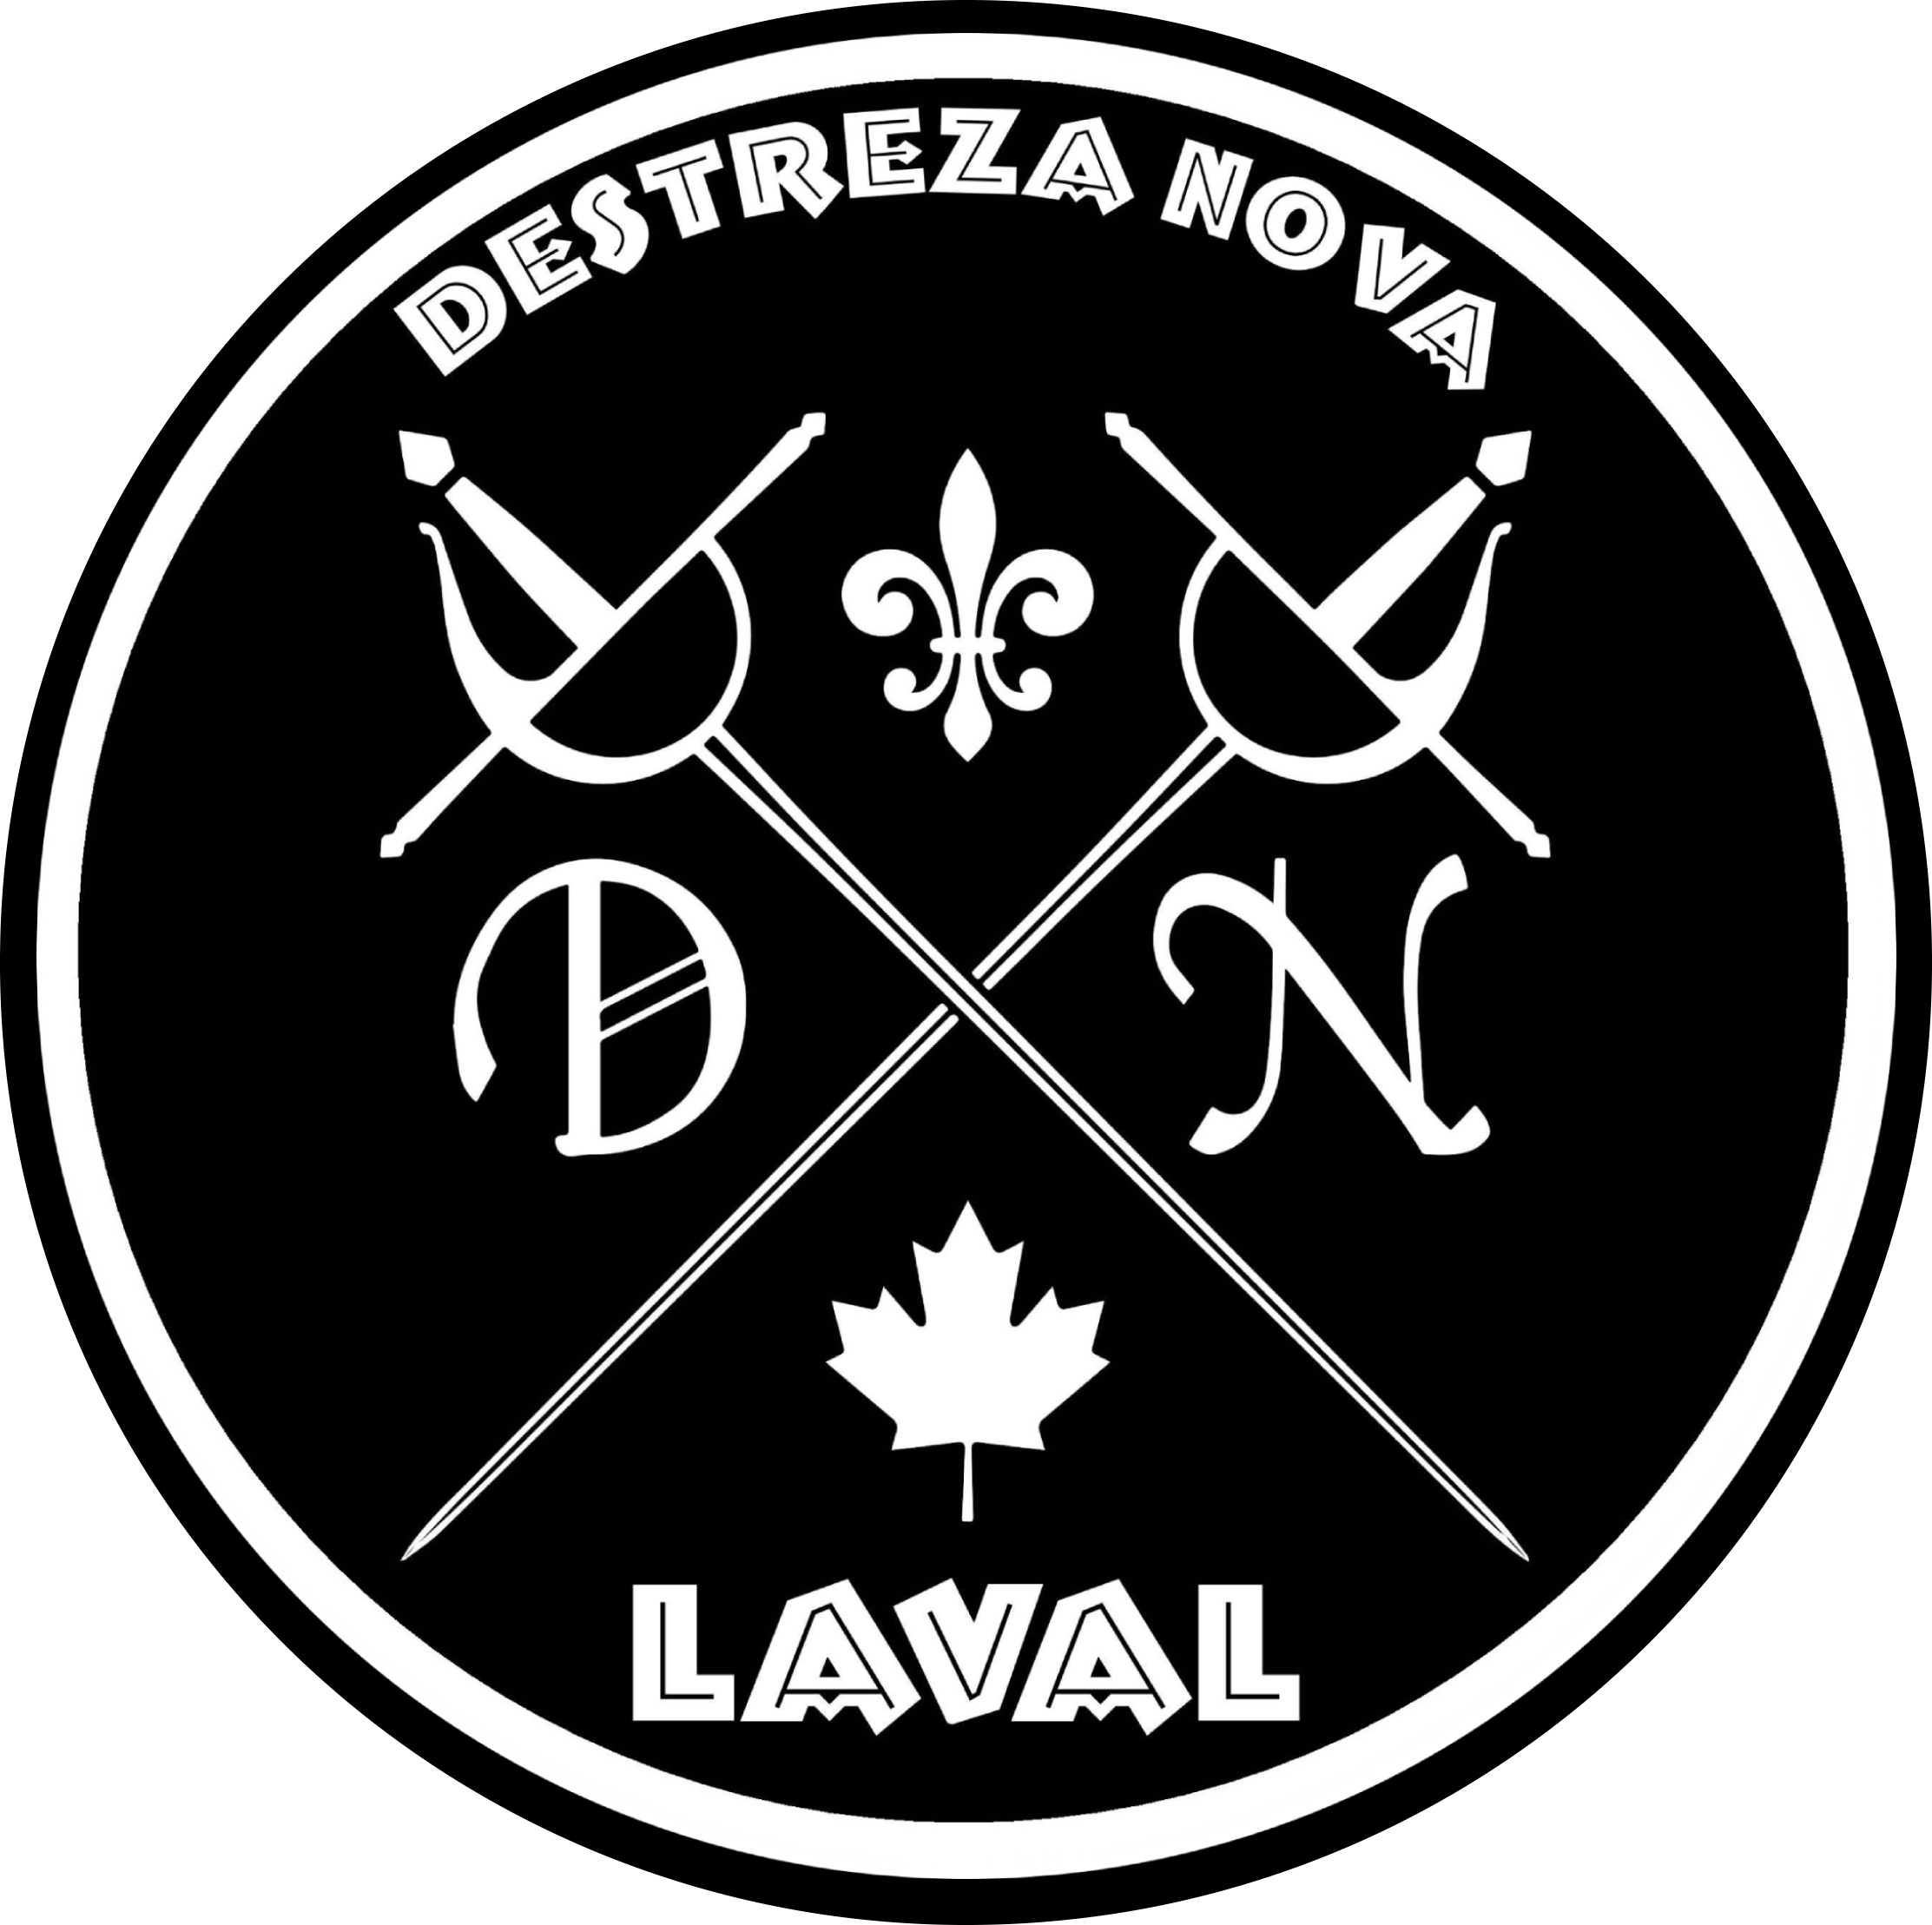 Club d'escrime historique Destreza Nova Laval